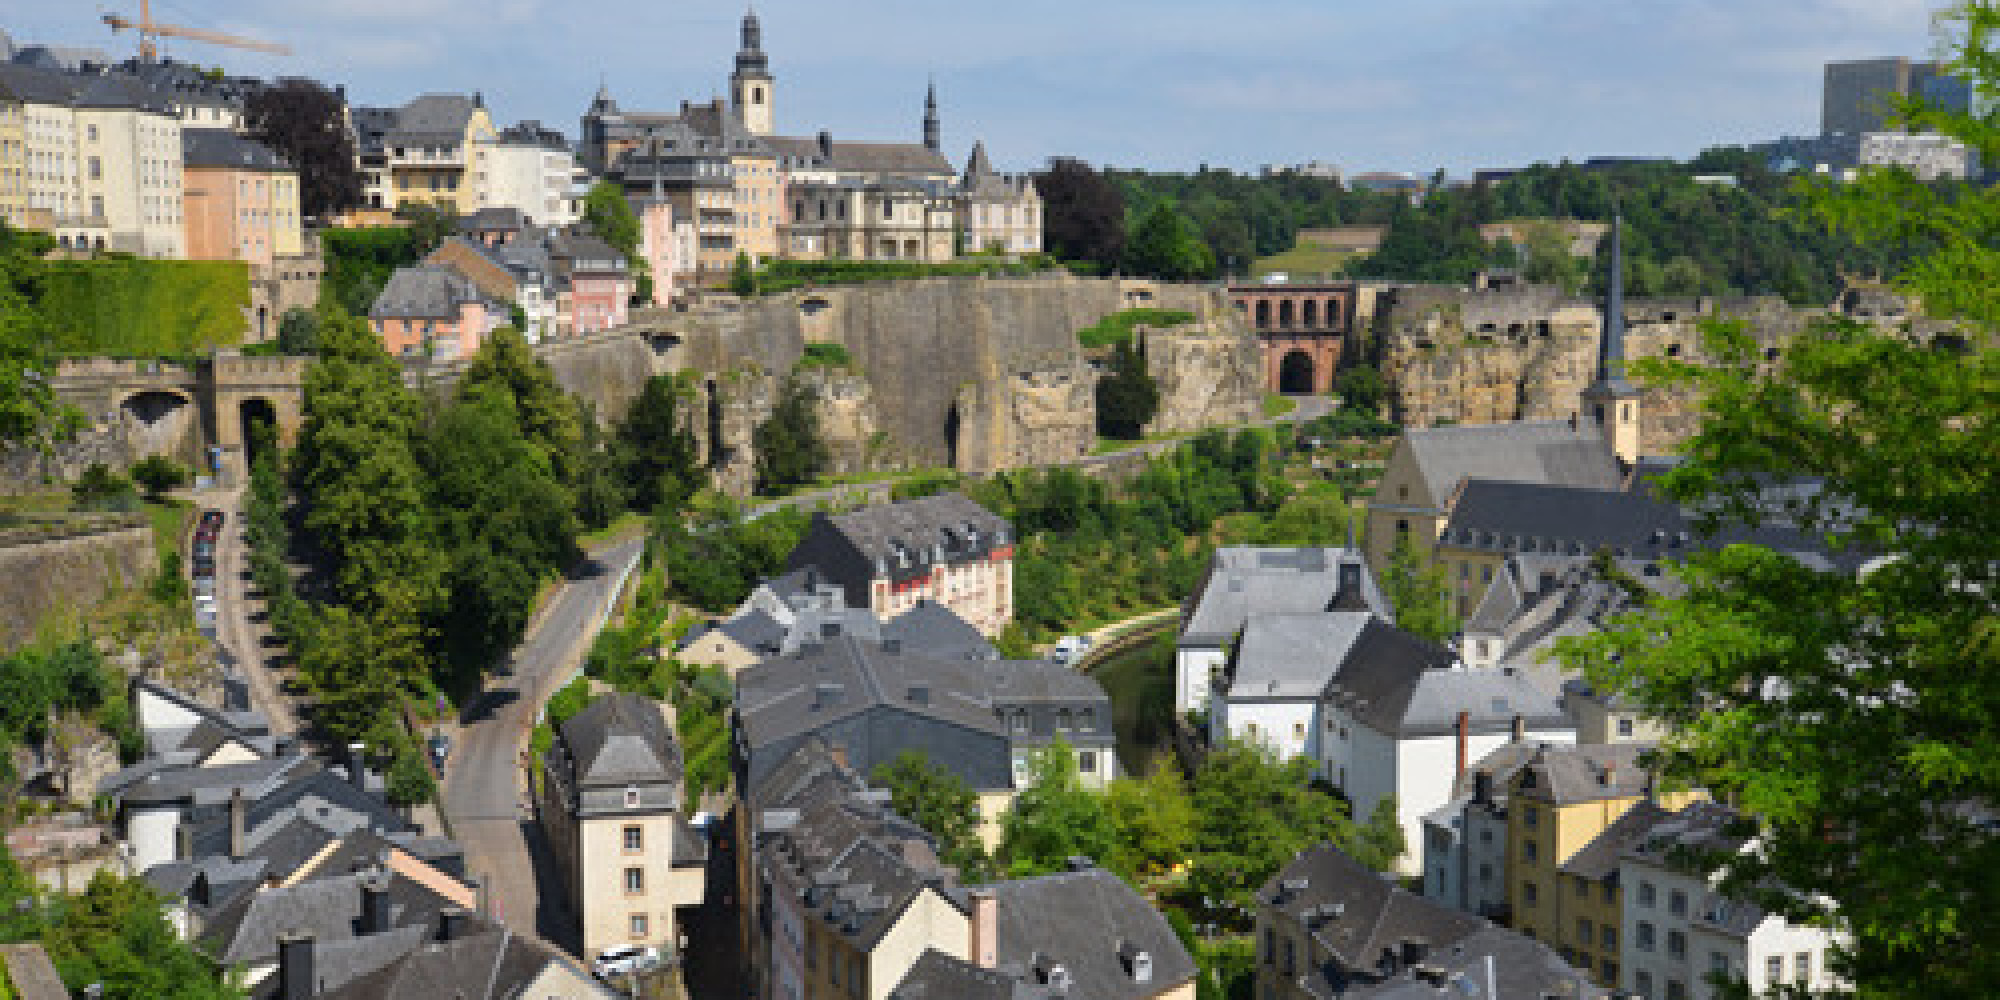 Partnersuche in luxemburg kostenlos